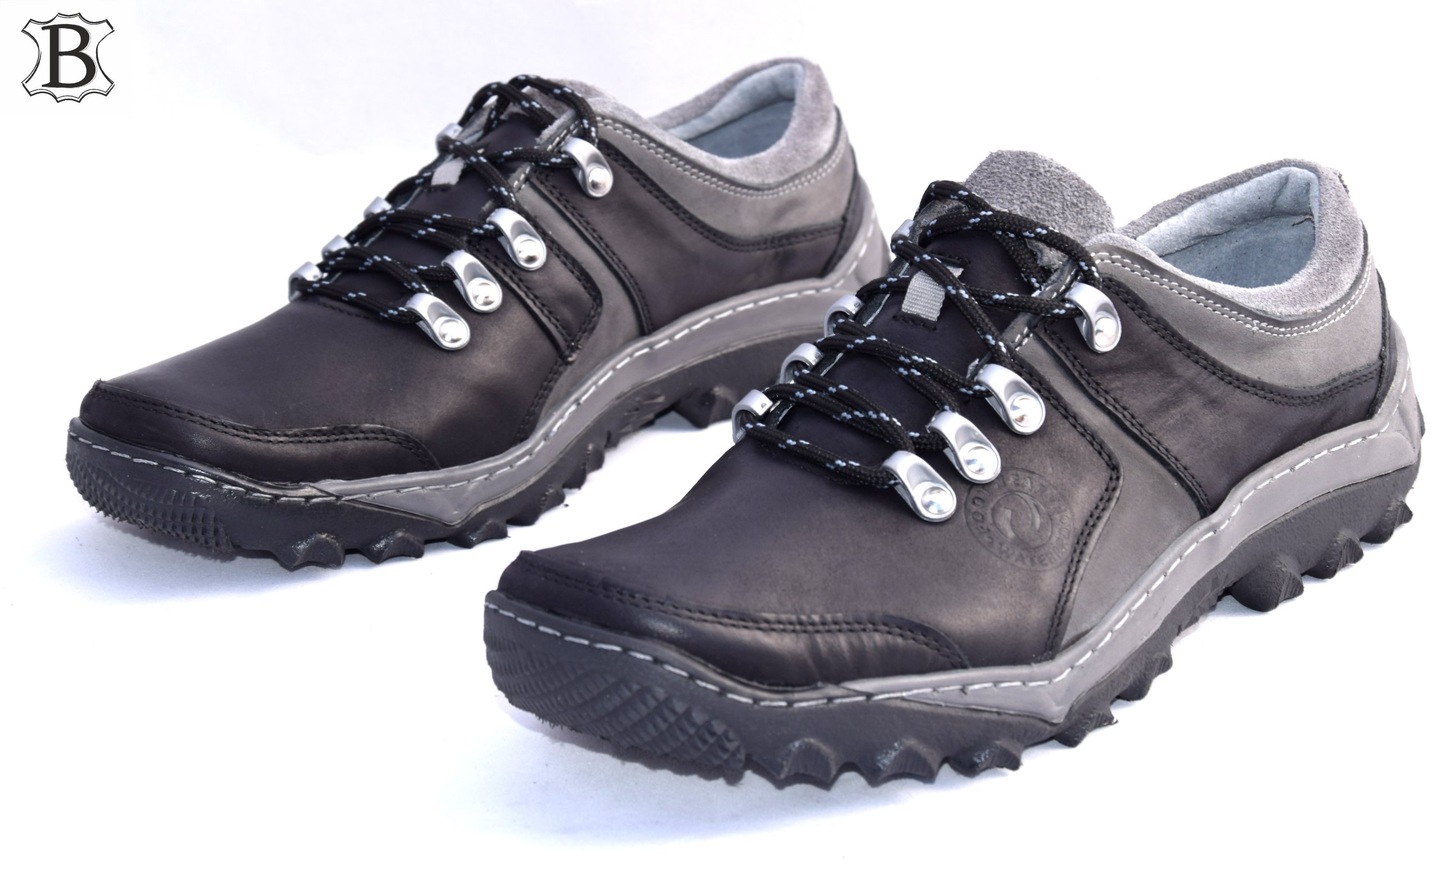 Obuwie trekkingowe czarne polskie buty skórzane 278